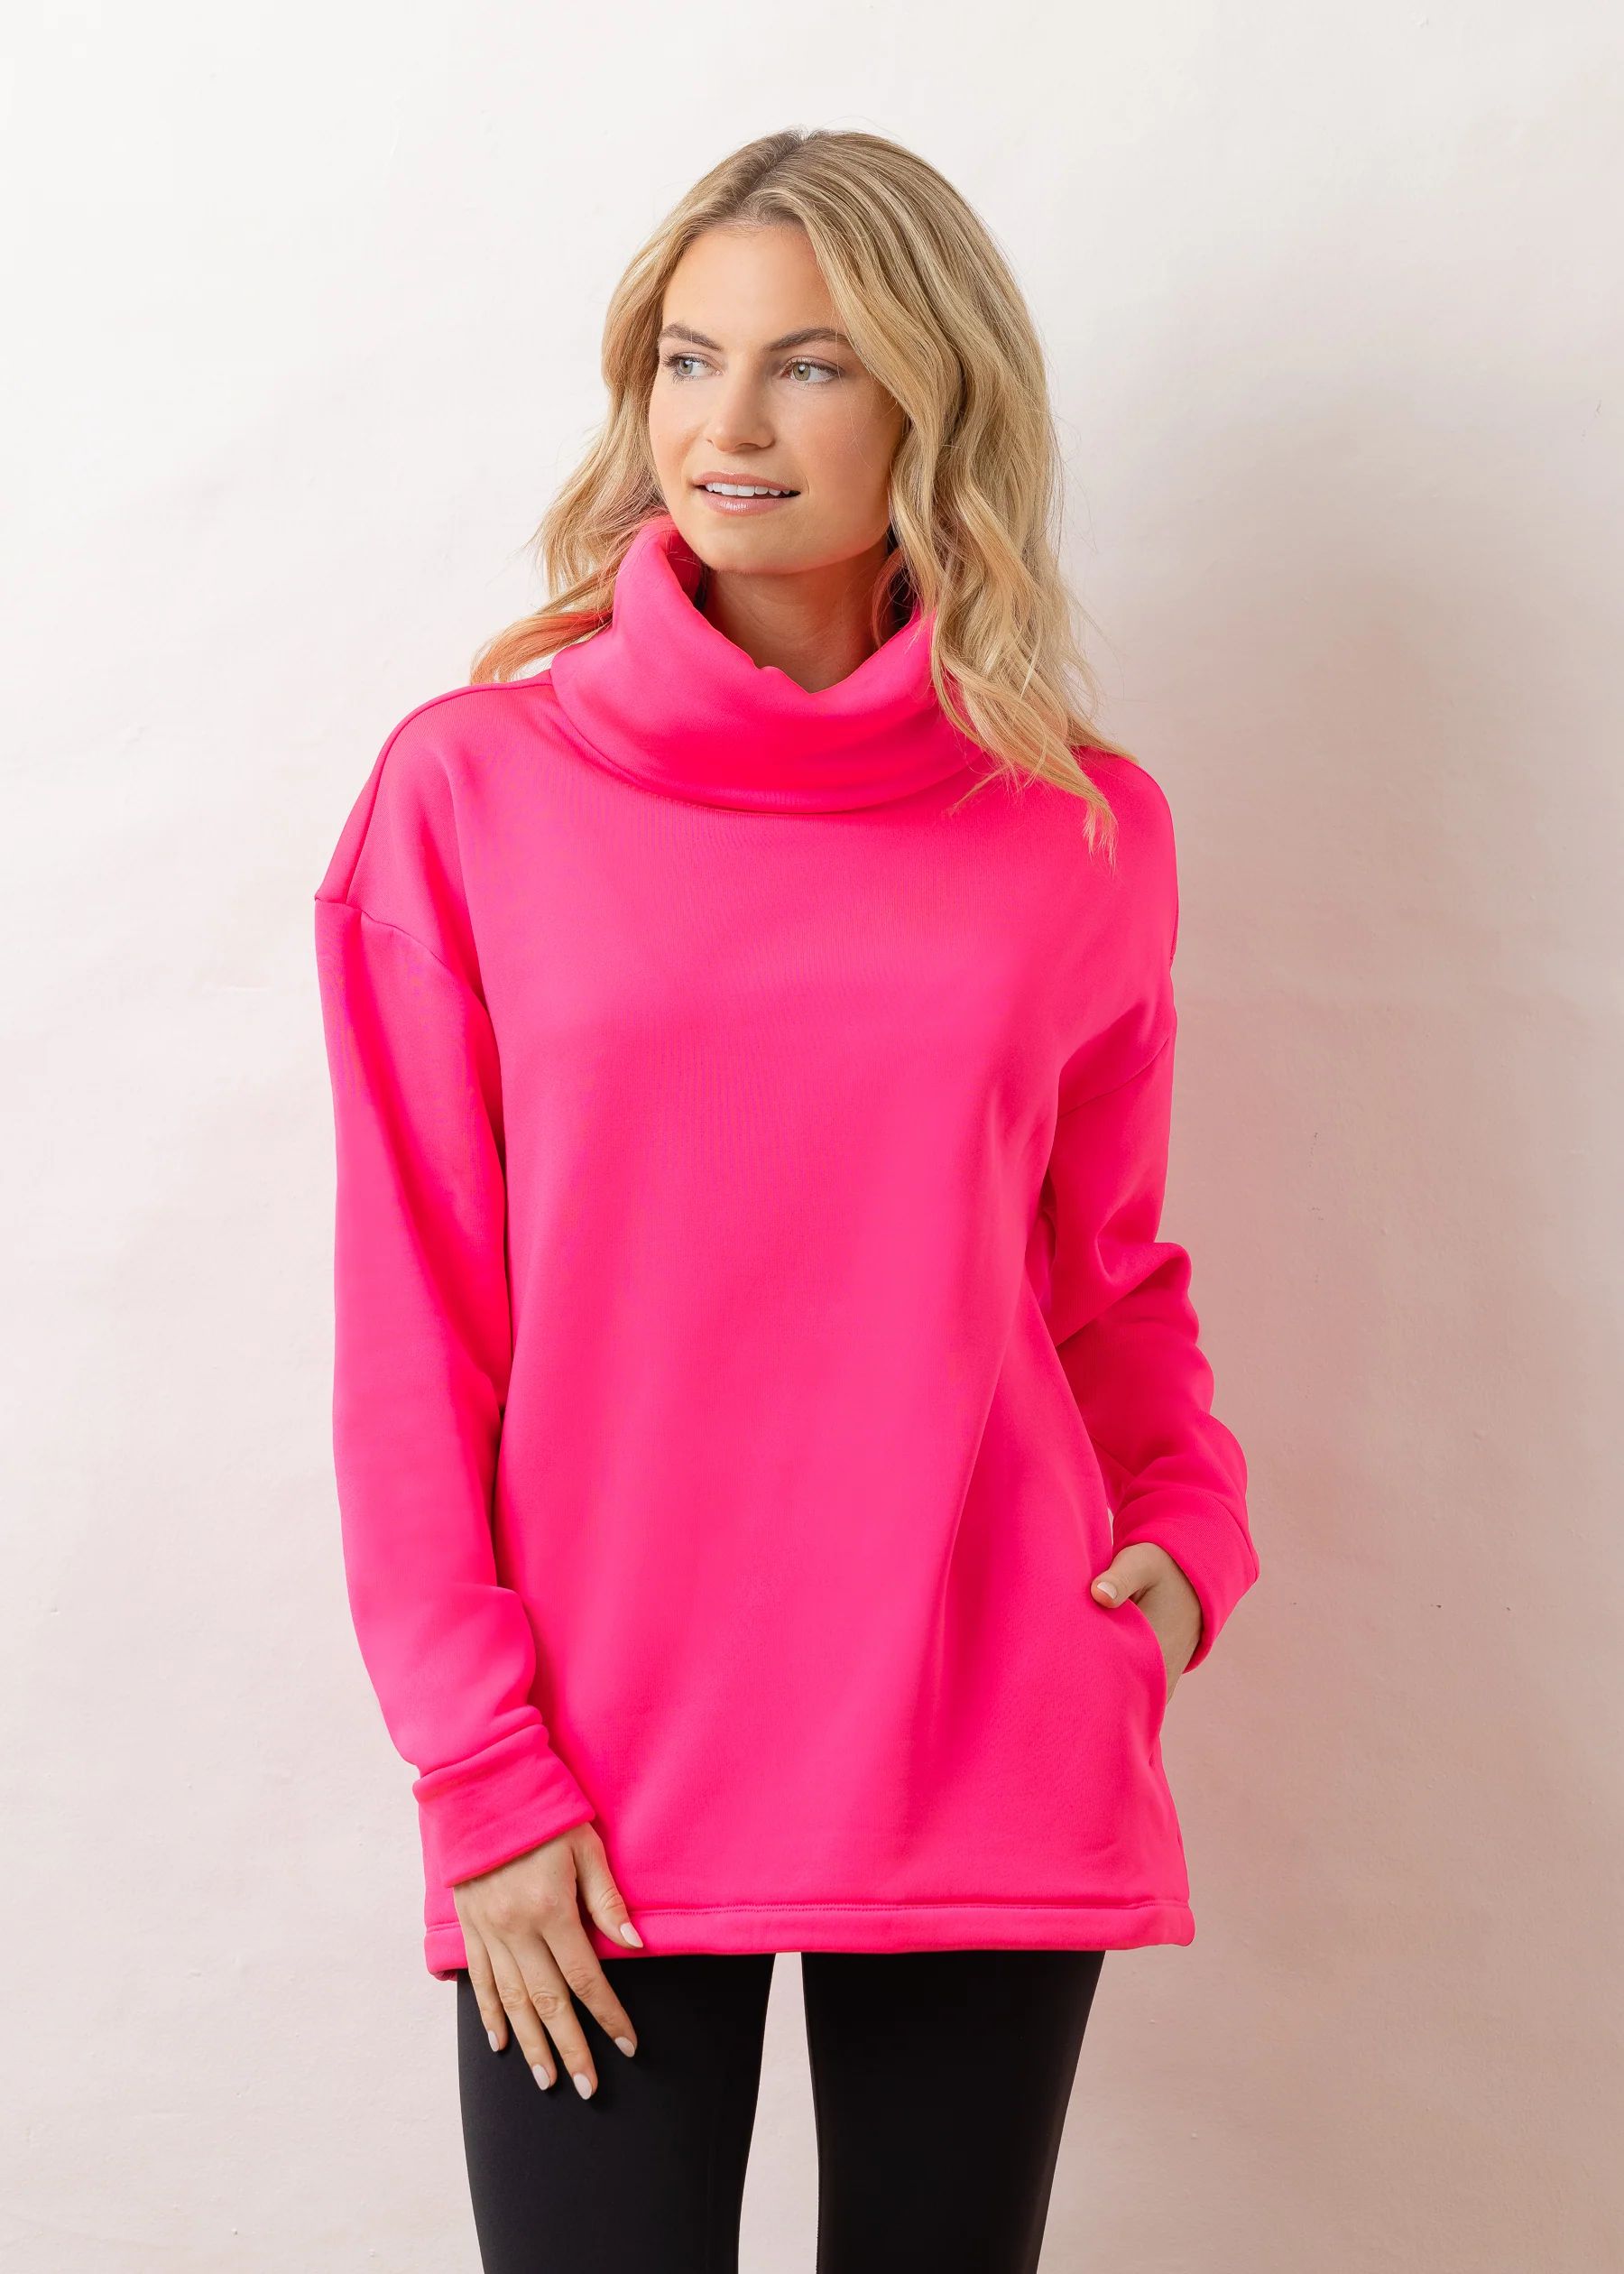 Clover Cocoon in Jersey Fleece (Neon Pink) | Dudley Stephens